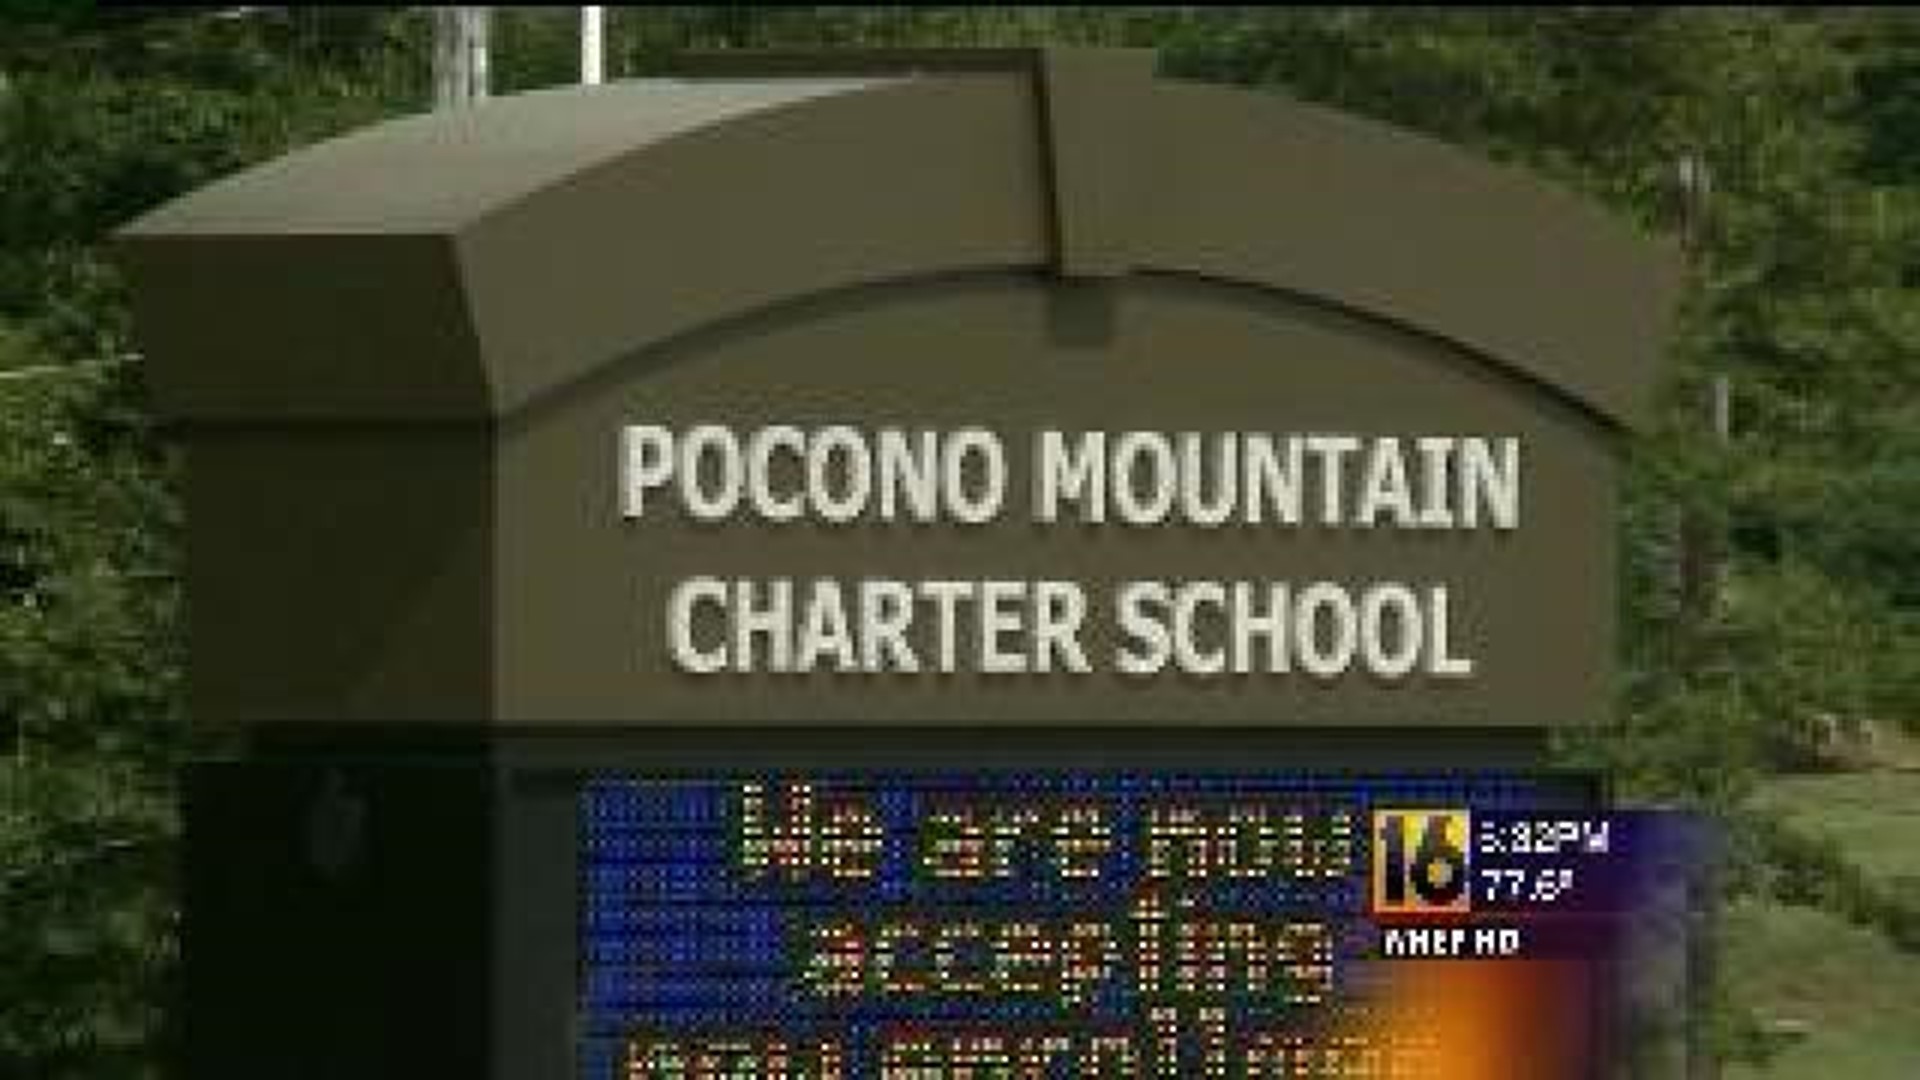 Charter Revoked, Children To Enroll Elsewhere